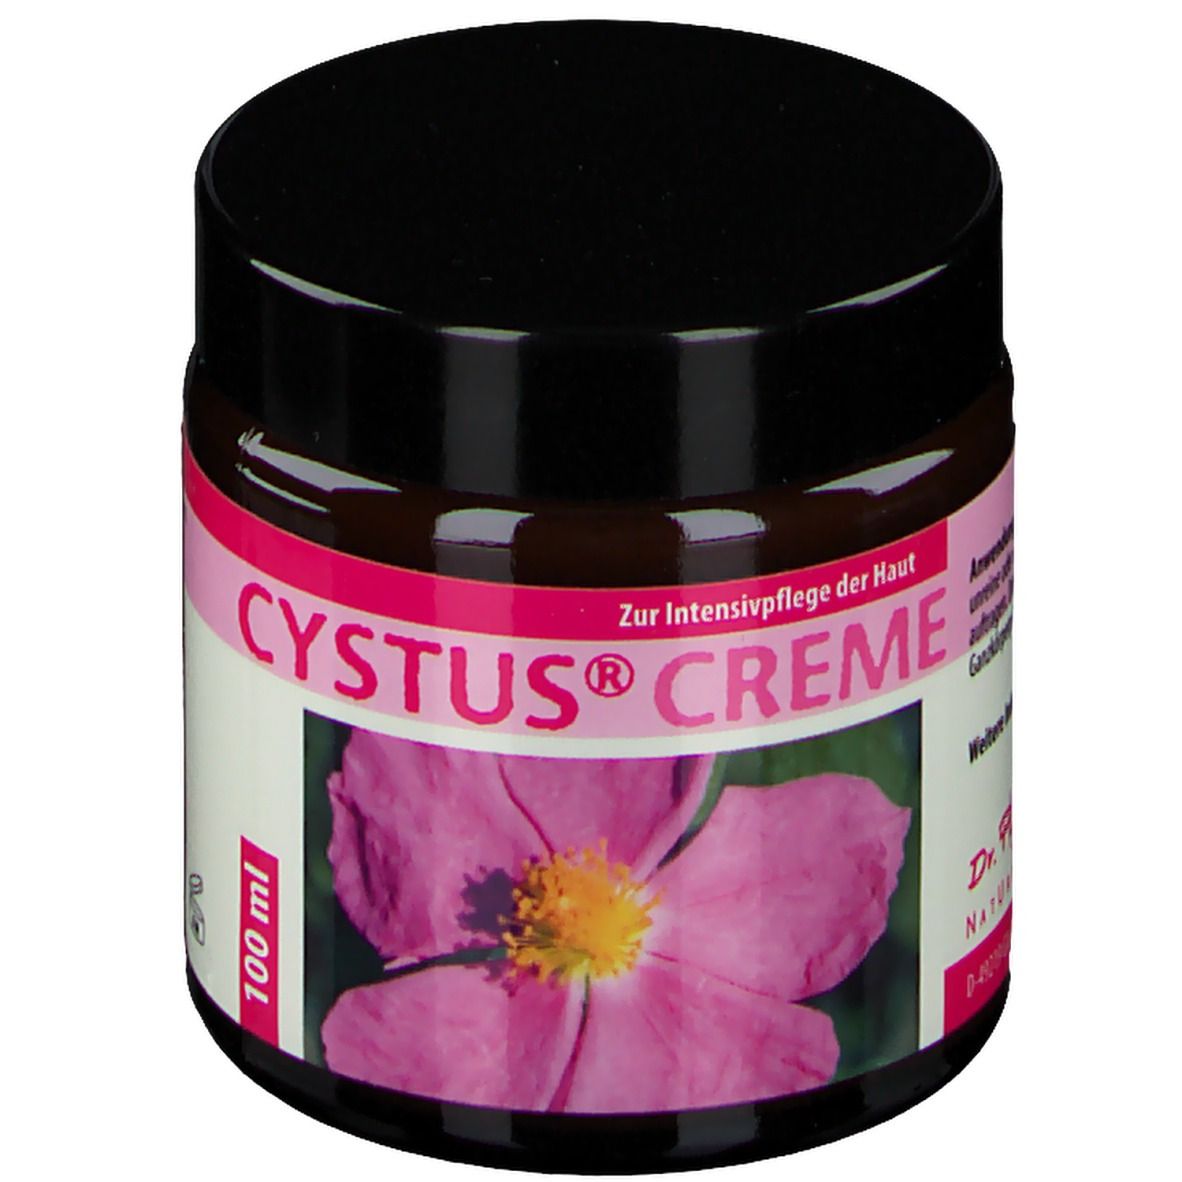 Cystus® Creme